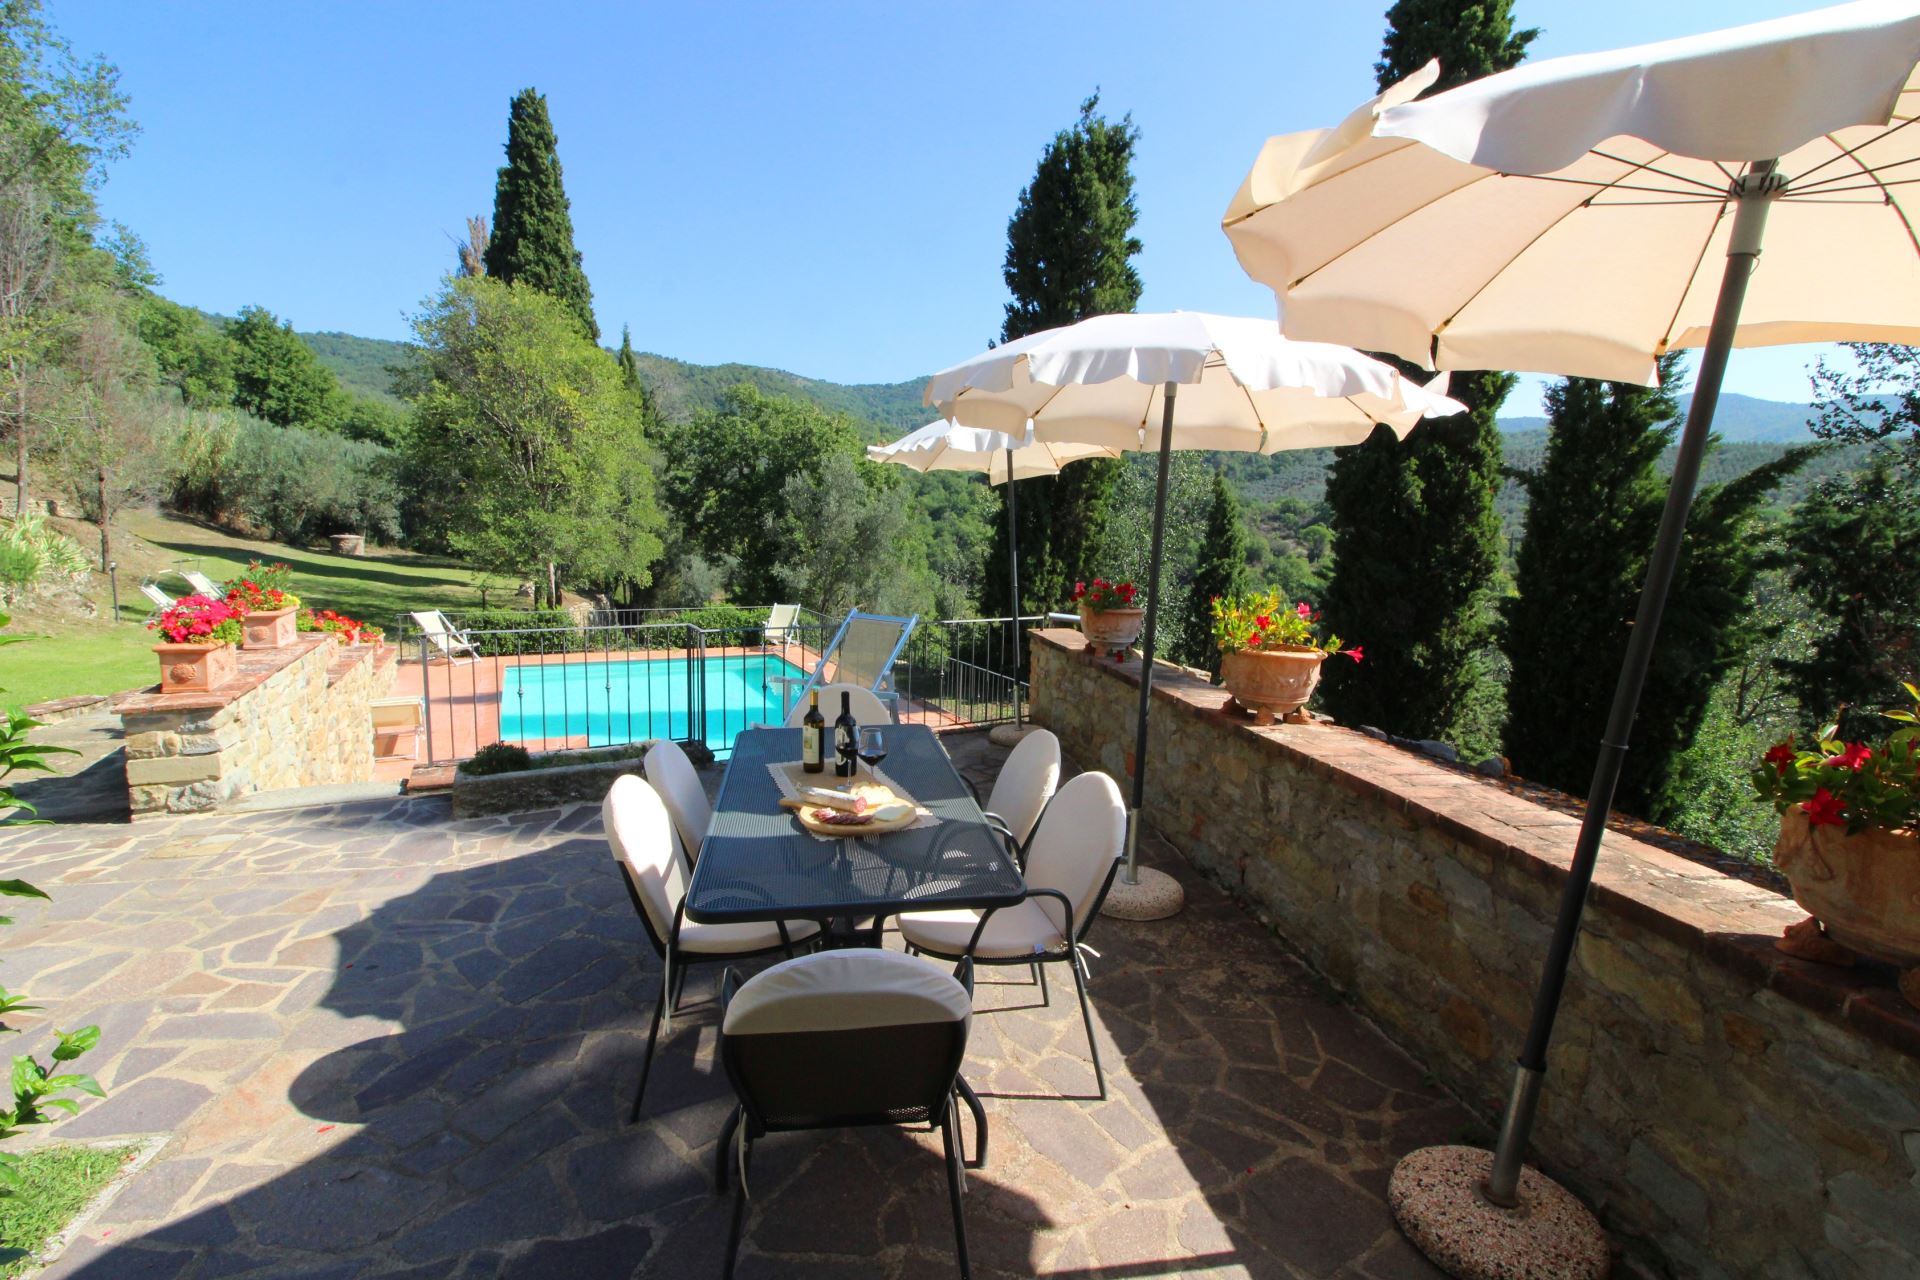 434_b983d9c_Kindvriendelijk vakantiehuis met privÃ© zwembad, Borgo Caprile, Toscane, Cortona, Arezzo, (35).